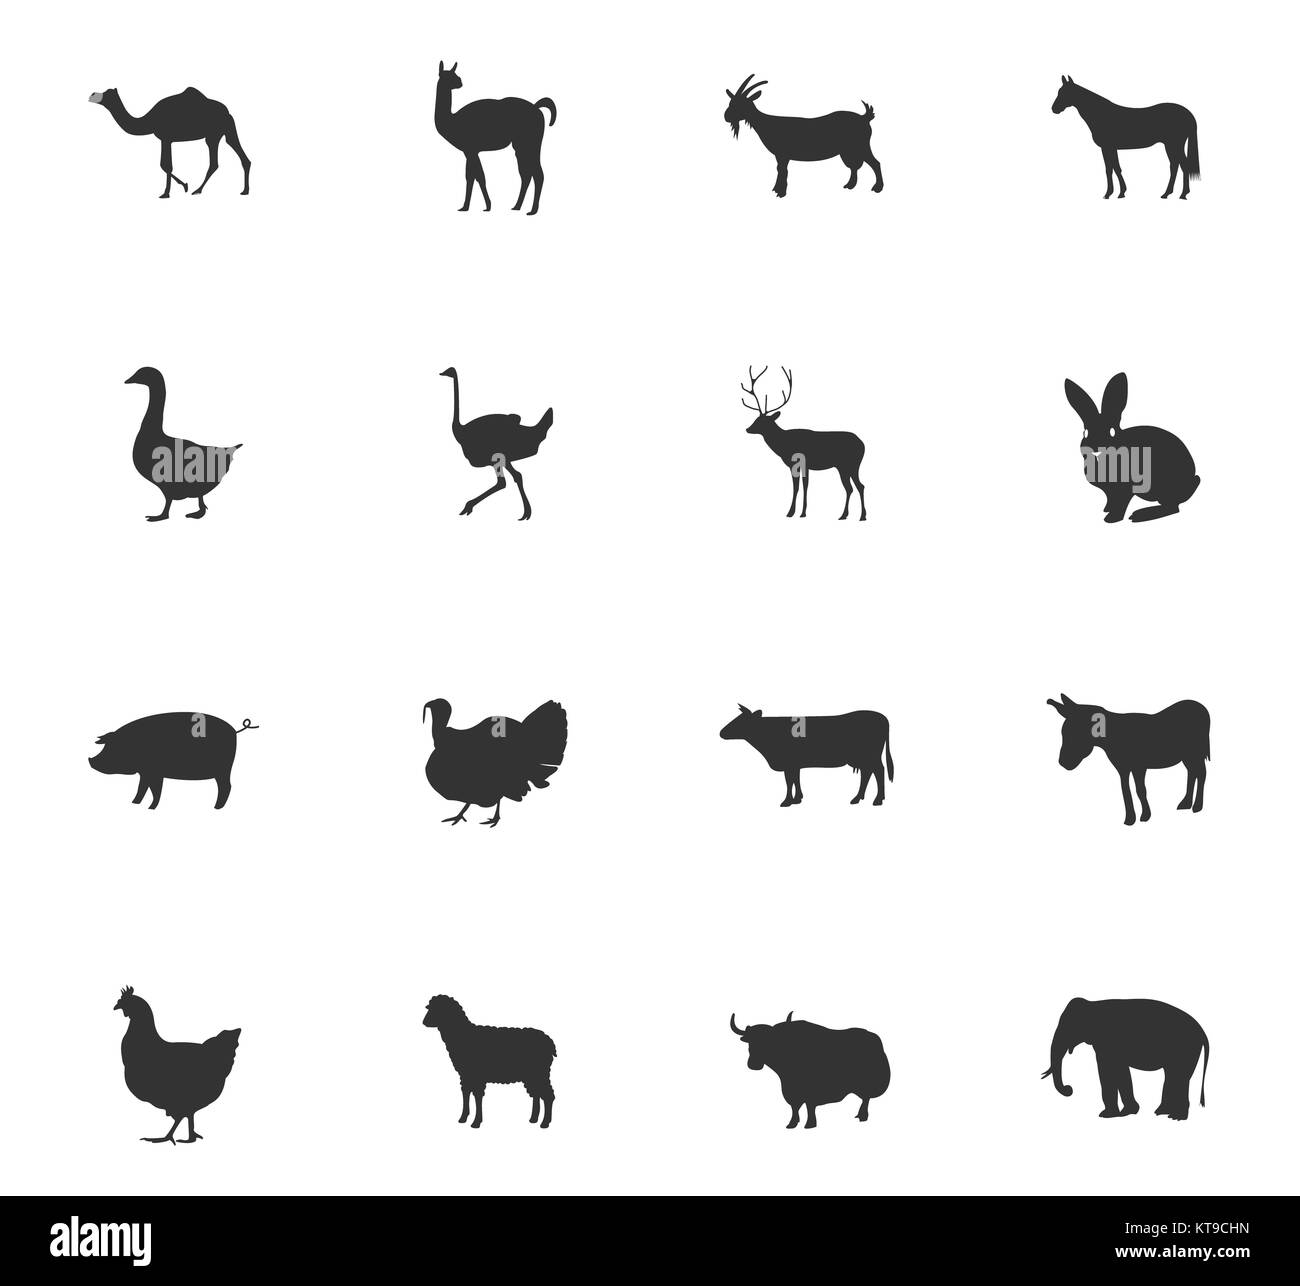 farm animals icon set Stock Photo - Alamy